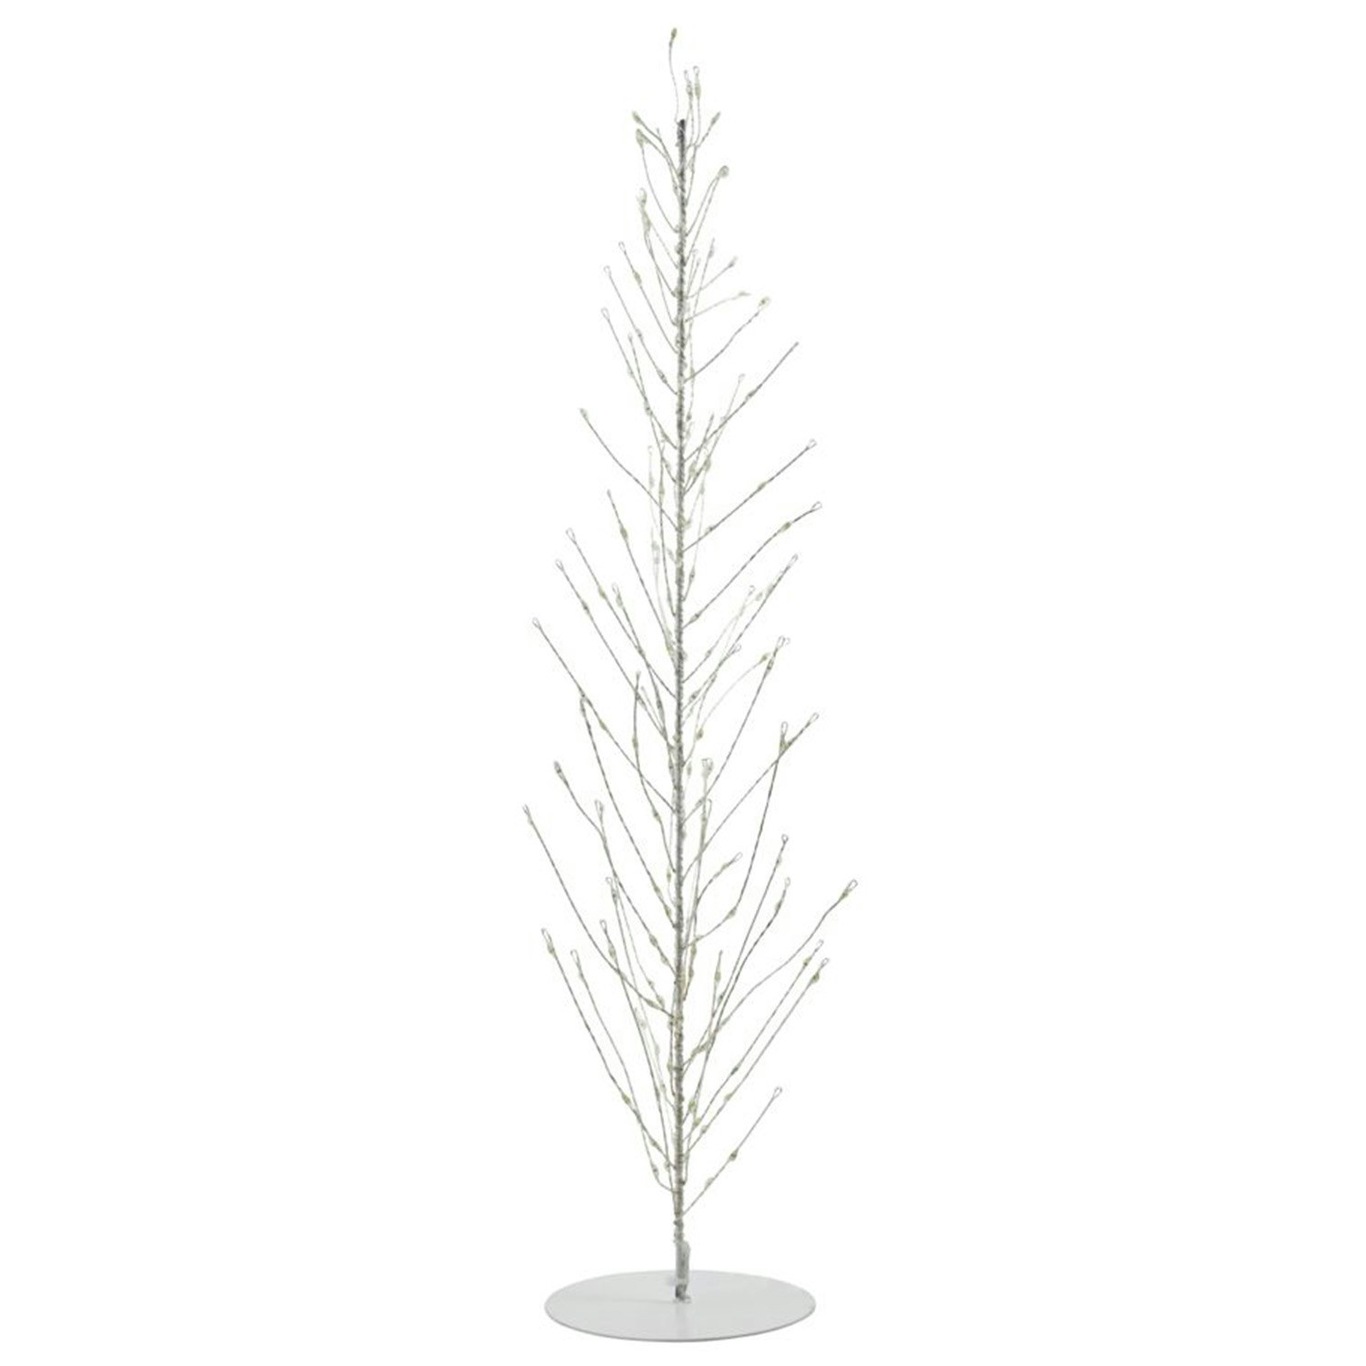 Glow Juletræ Hvidt, 45 cm